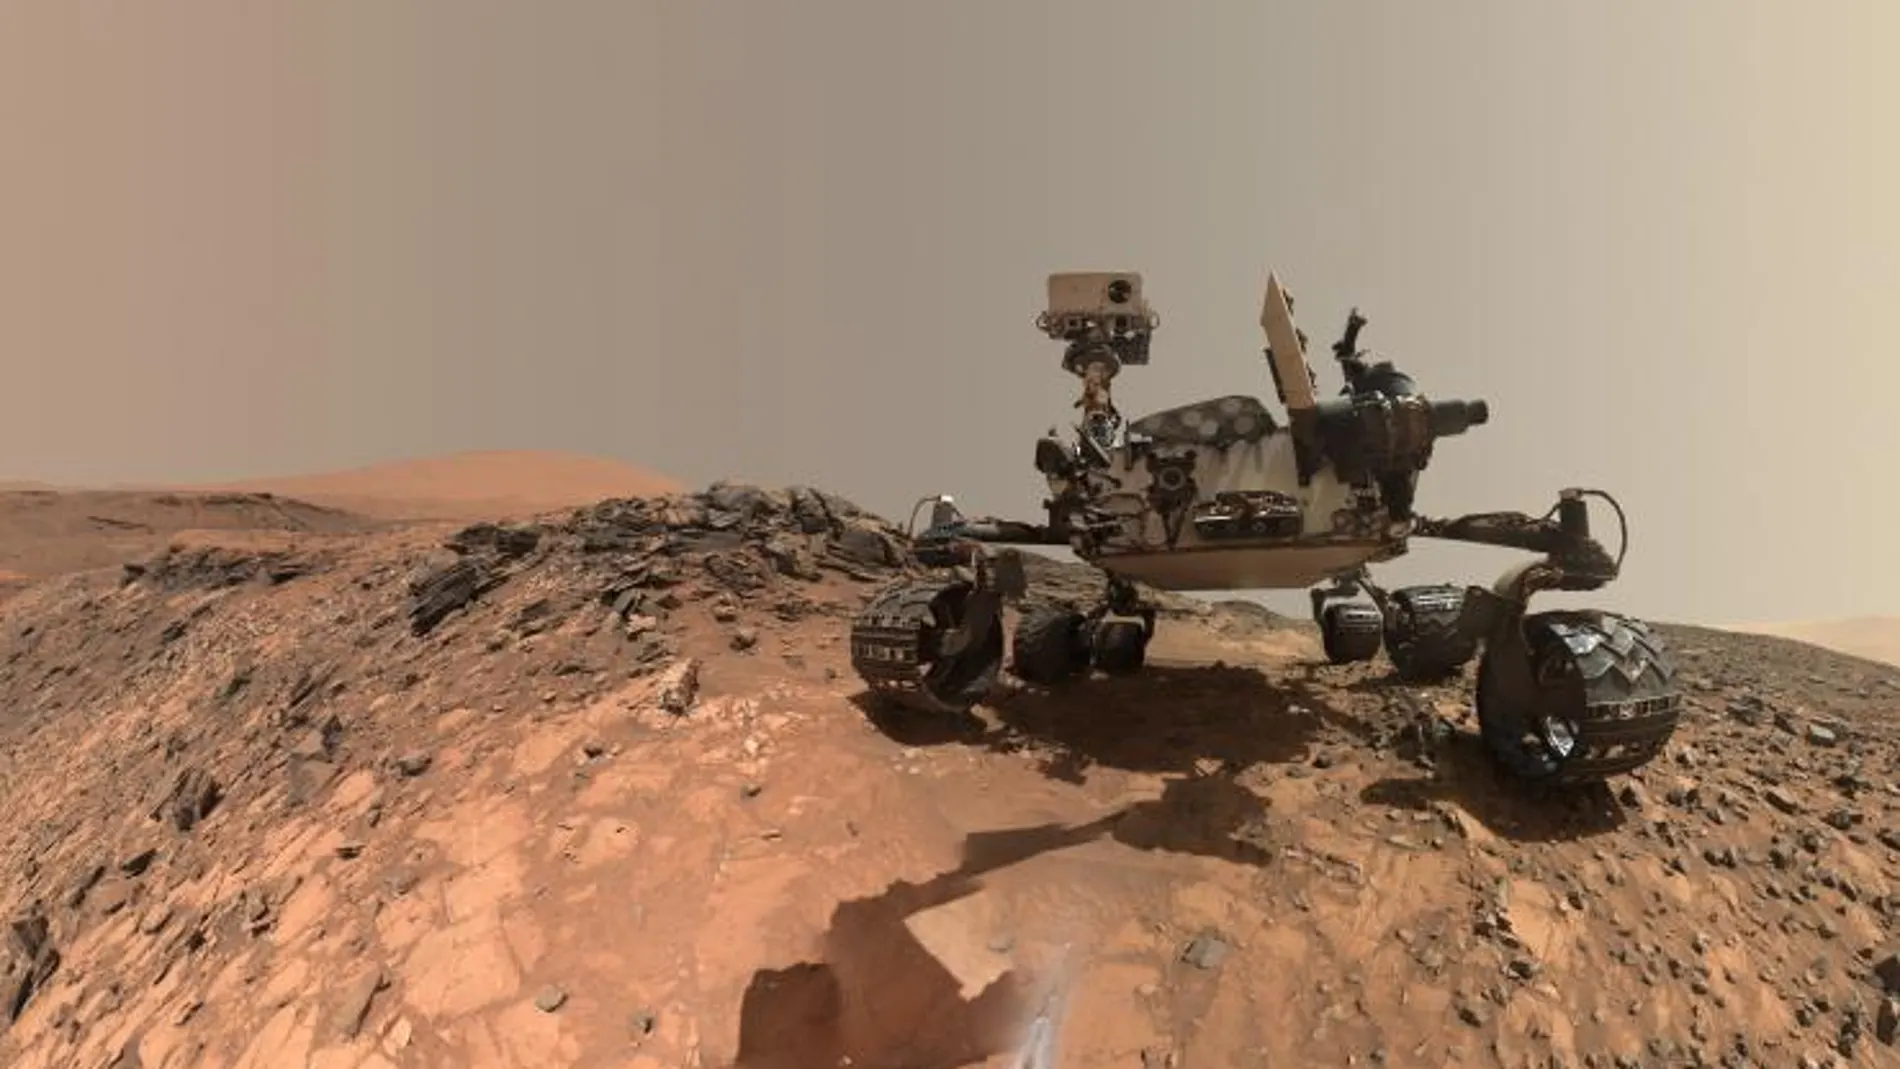 El rover Curiosity sobre la superficie de Marte/Nasa